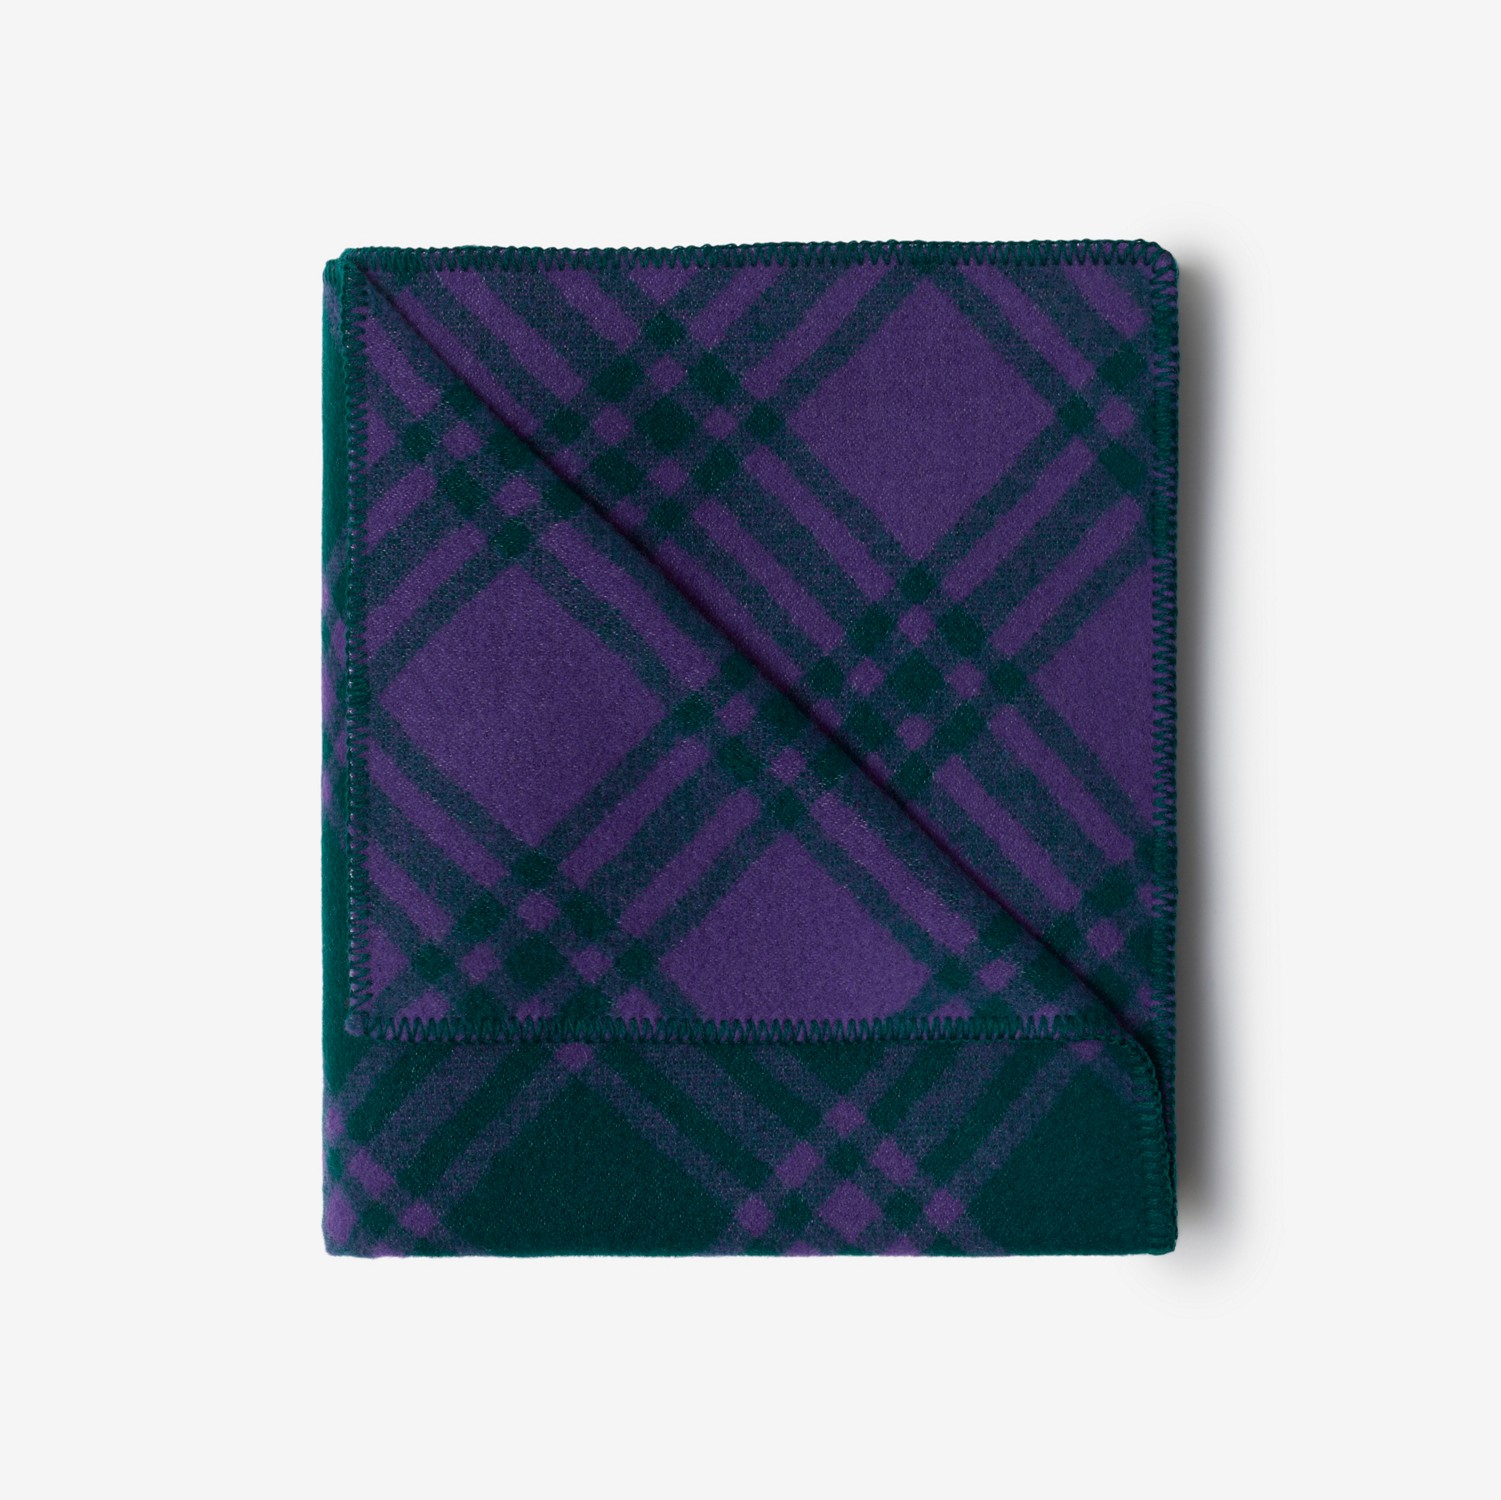 格纹羊毛毯 (藤蔓绿 / 皇室紫) | Burberry® 博柏利官网